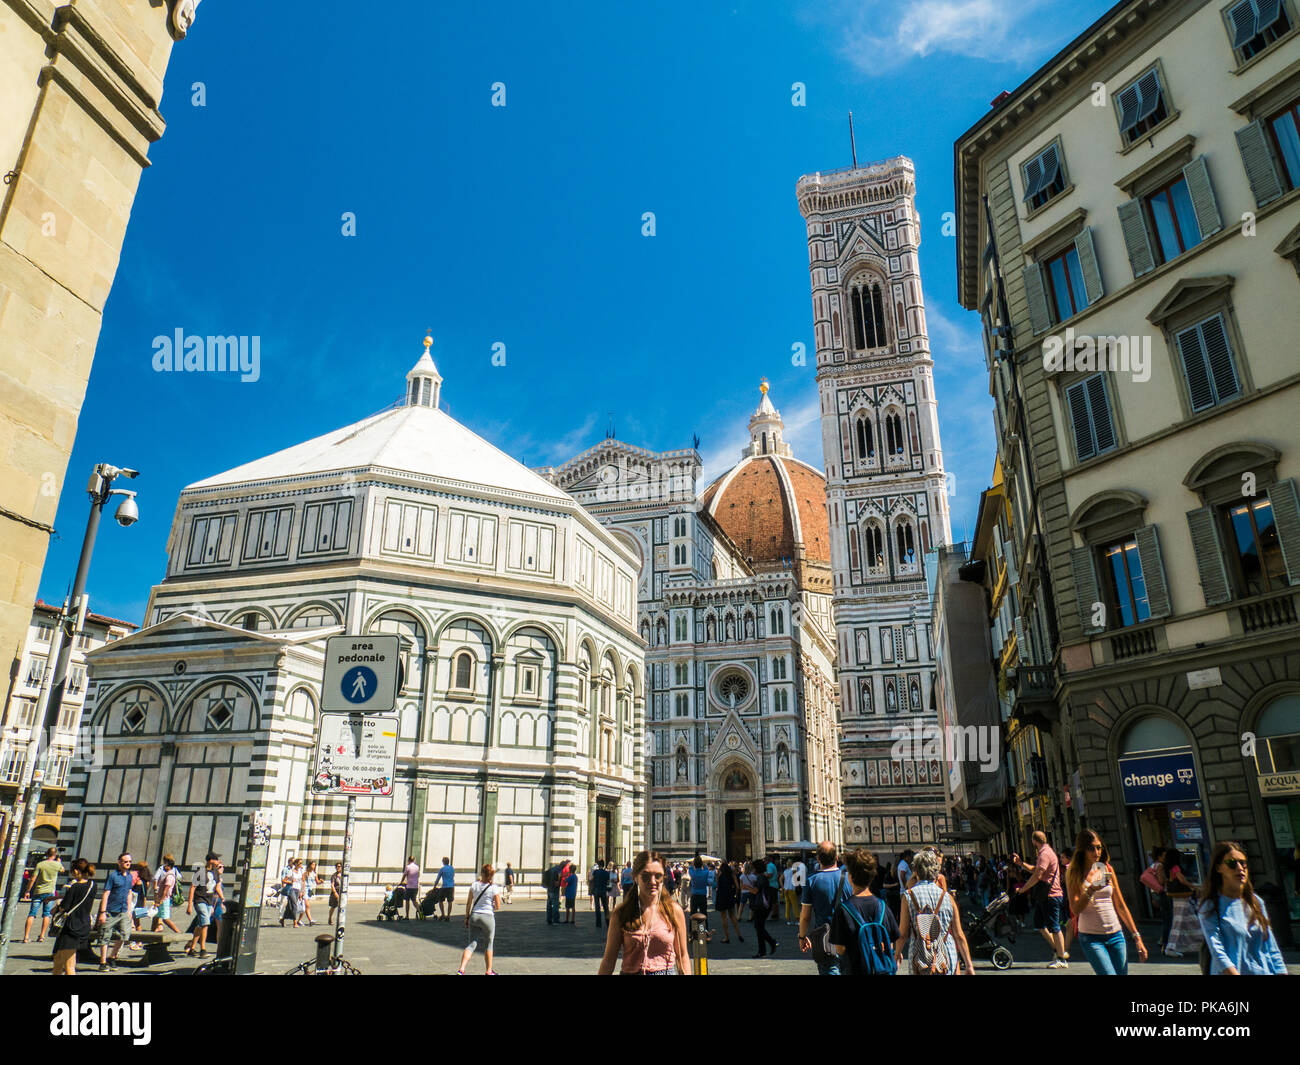 Florencia con el Bapistery de San Juan (extremo derecho) y la Catedral de Santa Maria del Fiore (centro), Toscana, Italia Foto de stock